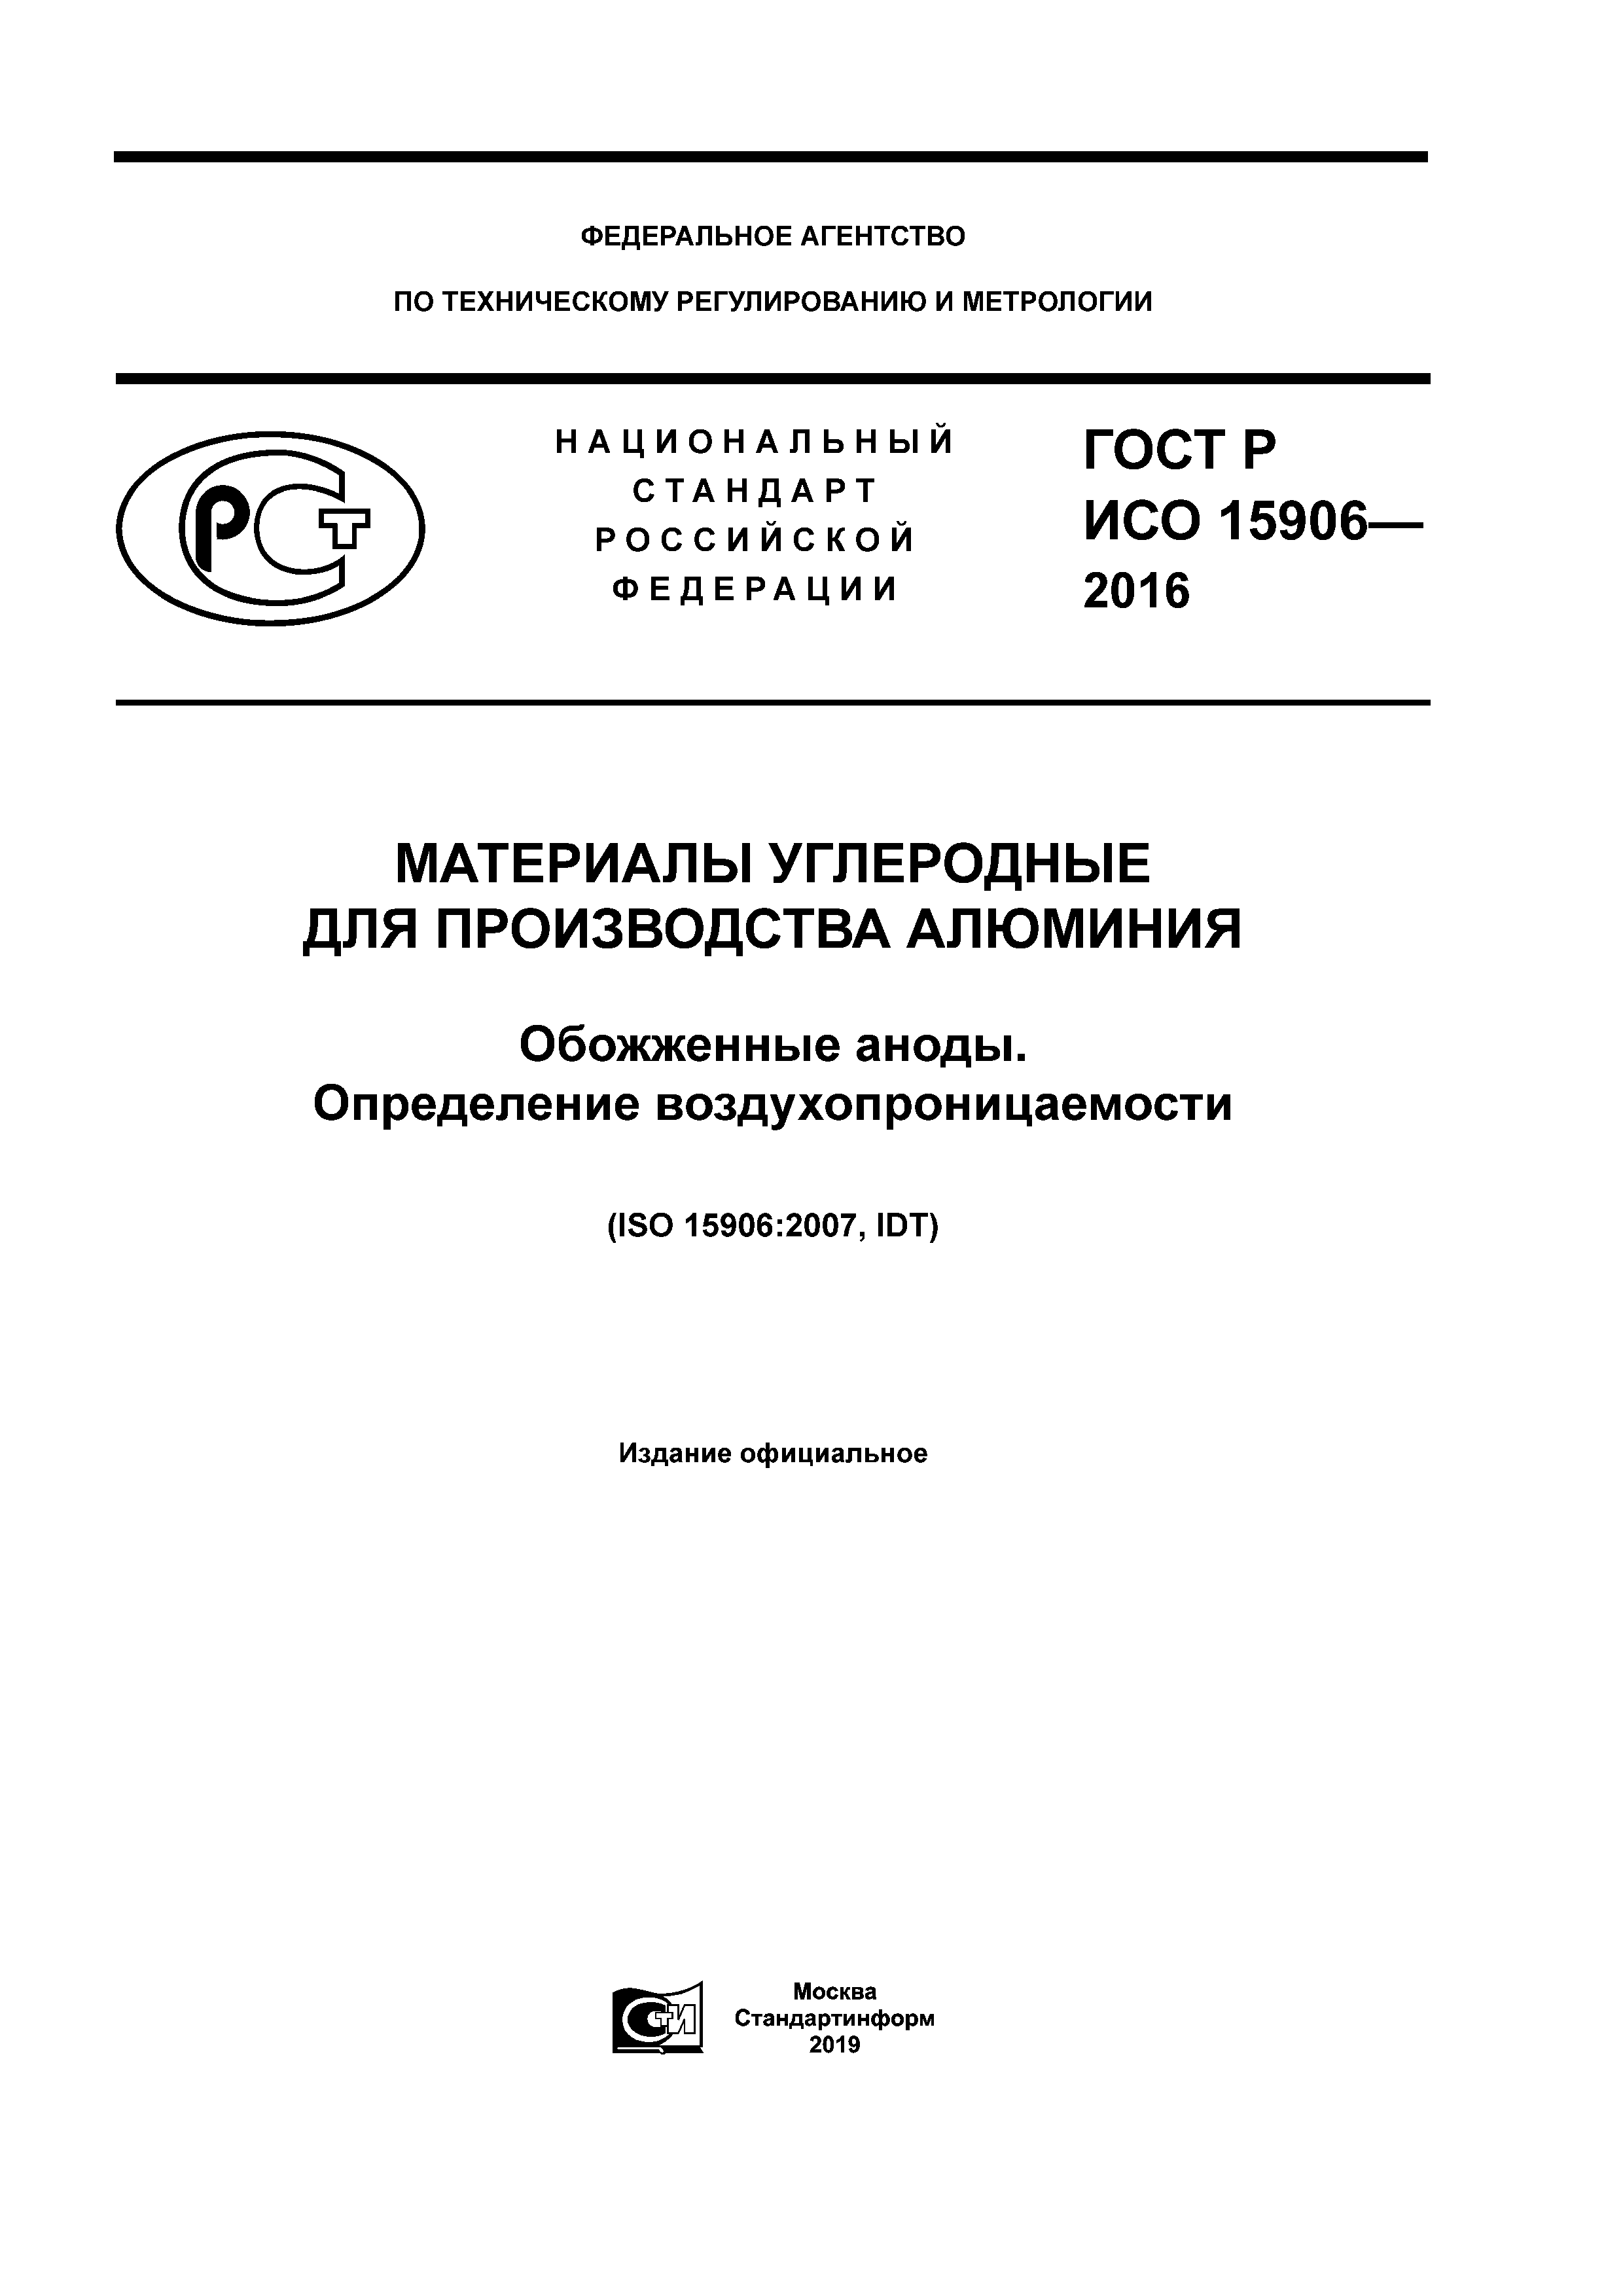 ГОСТ Р ИСО 15906-2016